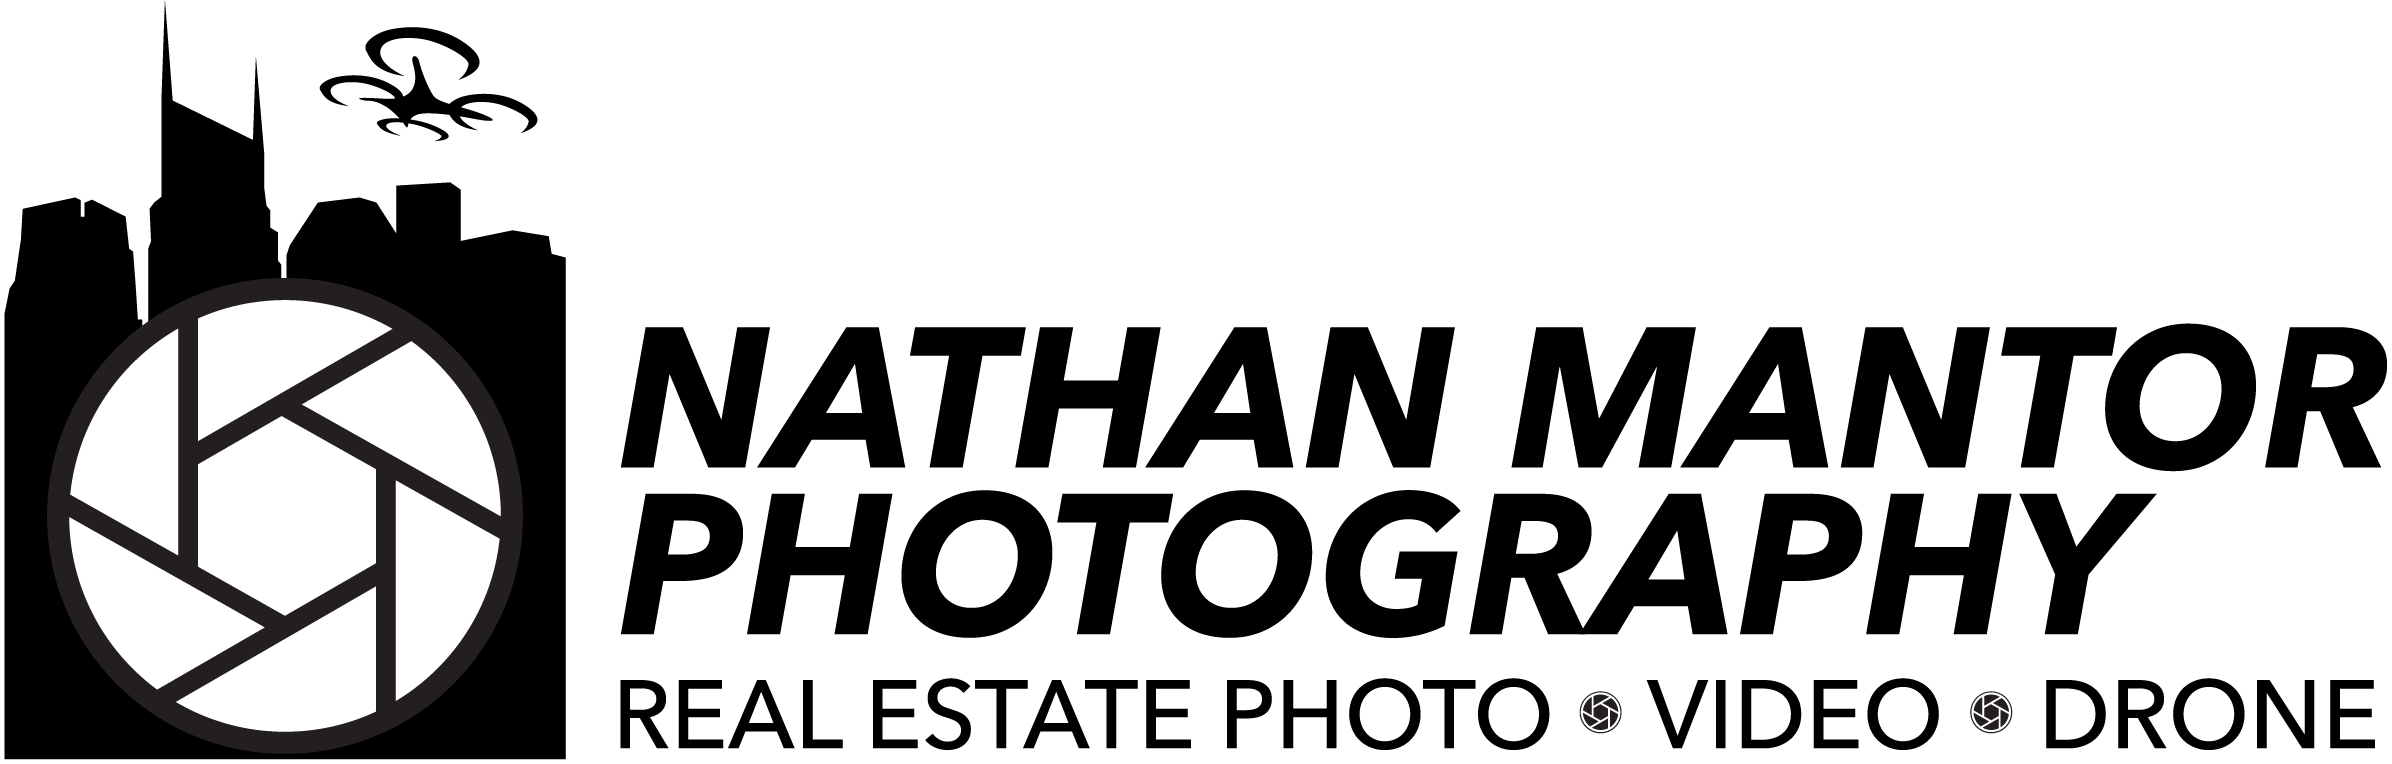 Nathan Mantor Photography